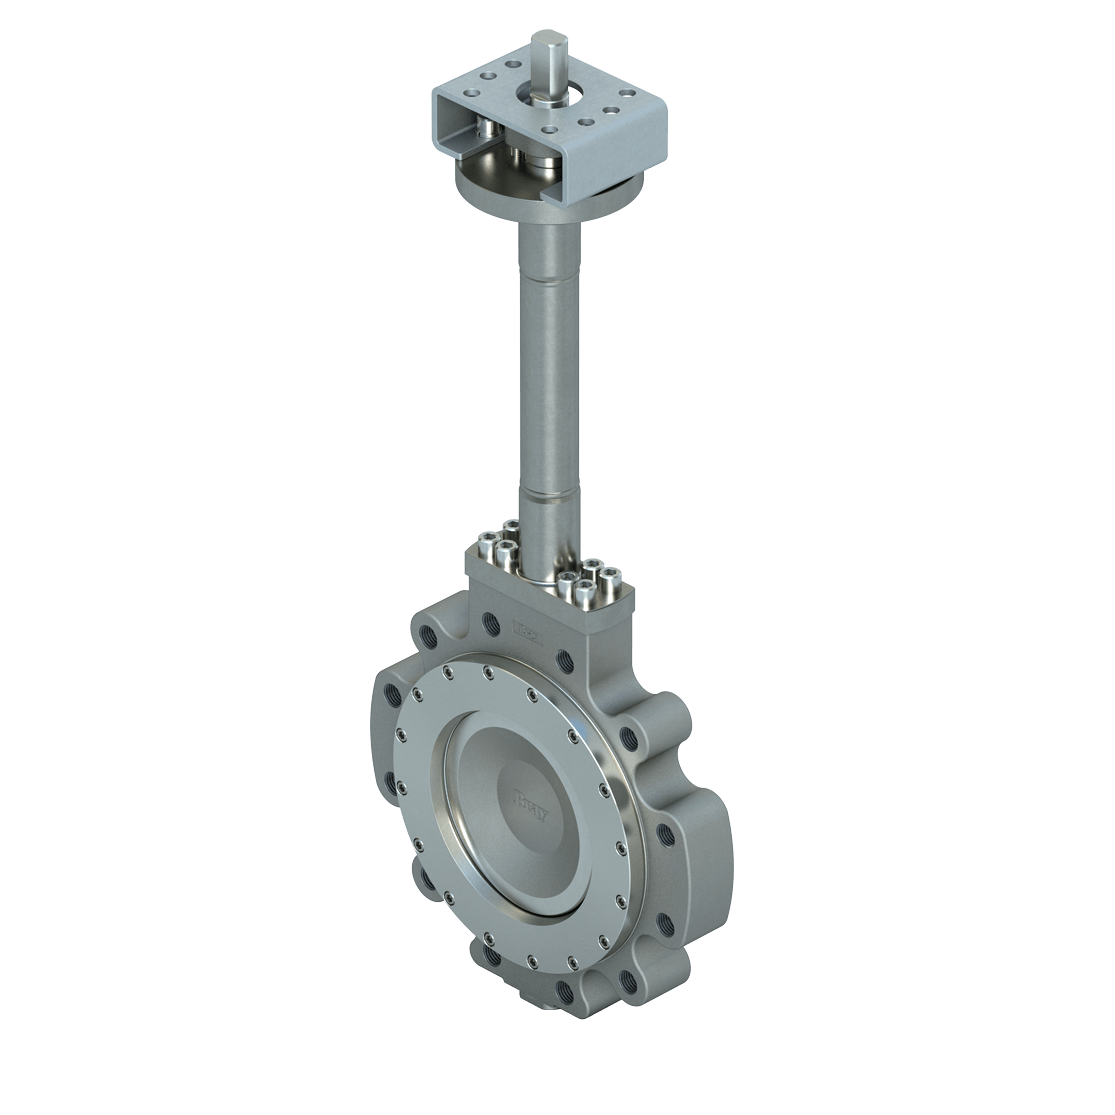 Imagen en miniatura de la válvula de compensación doble criogénica de alto rendimiento Bray McCannalok